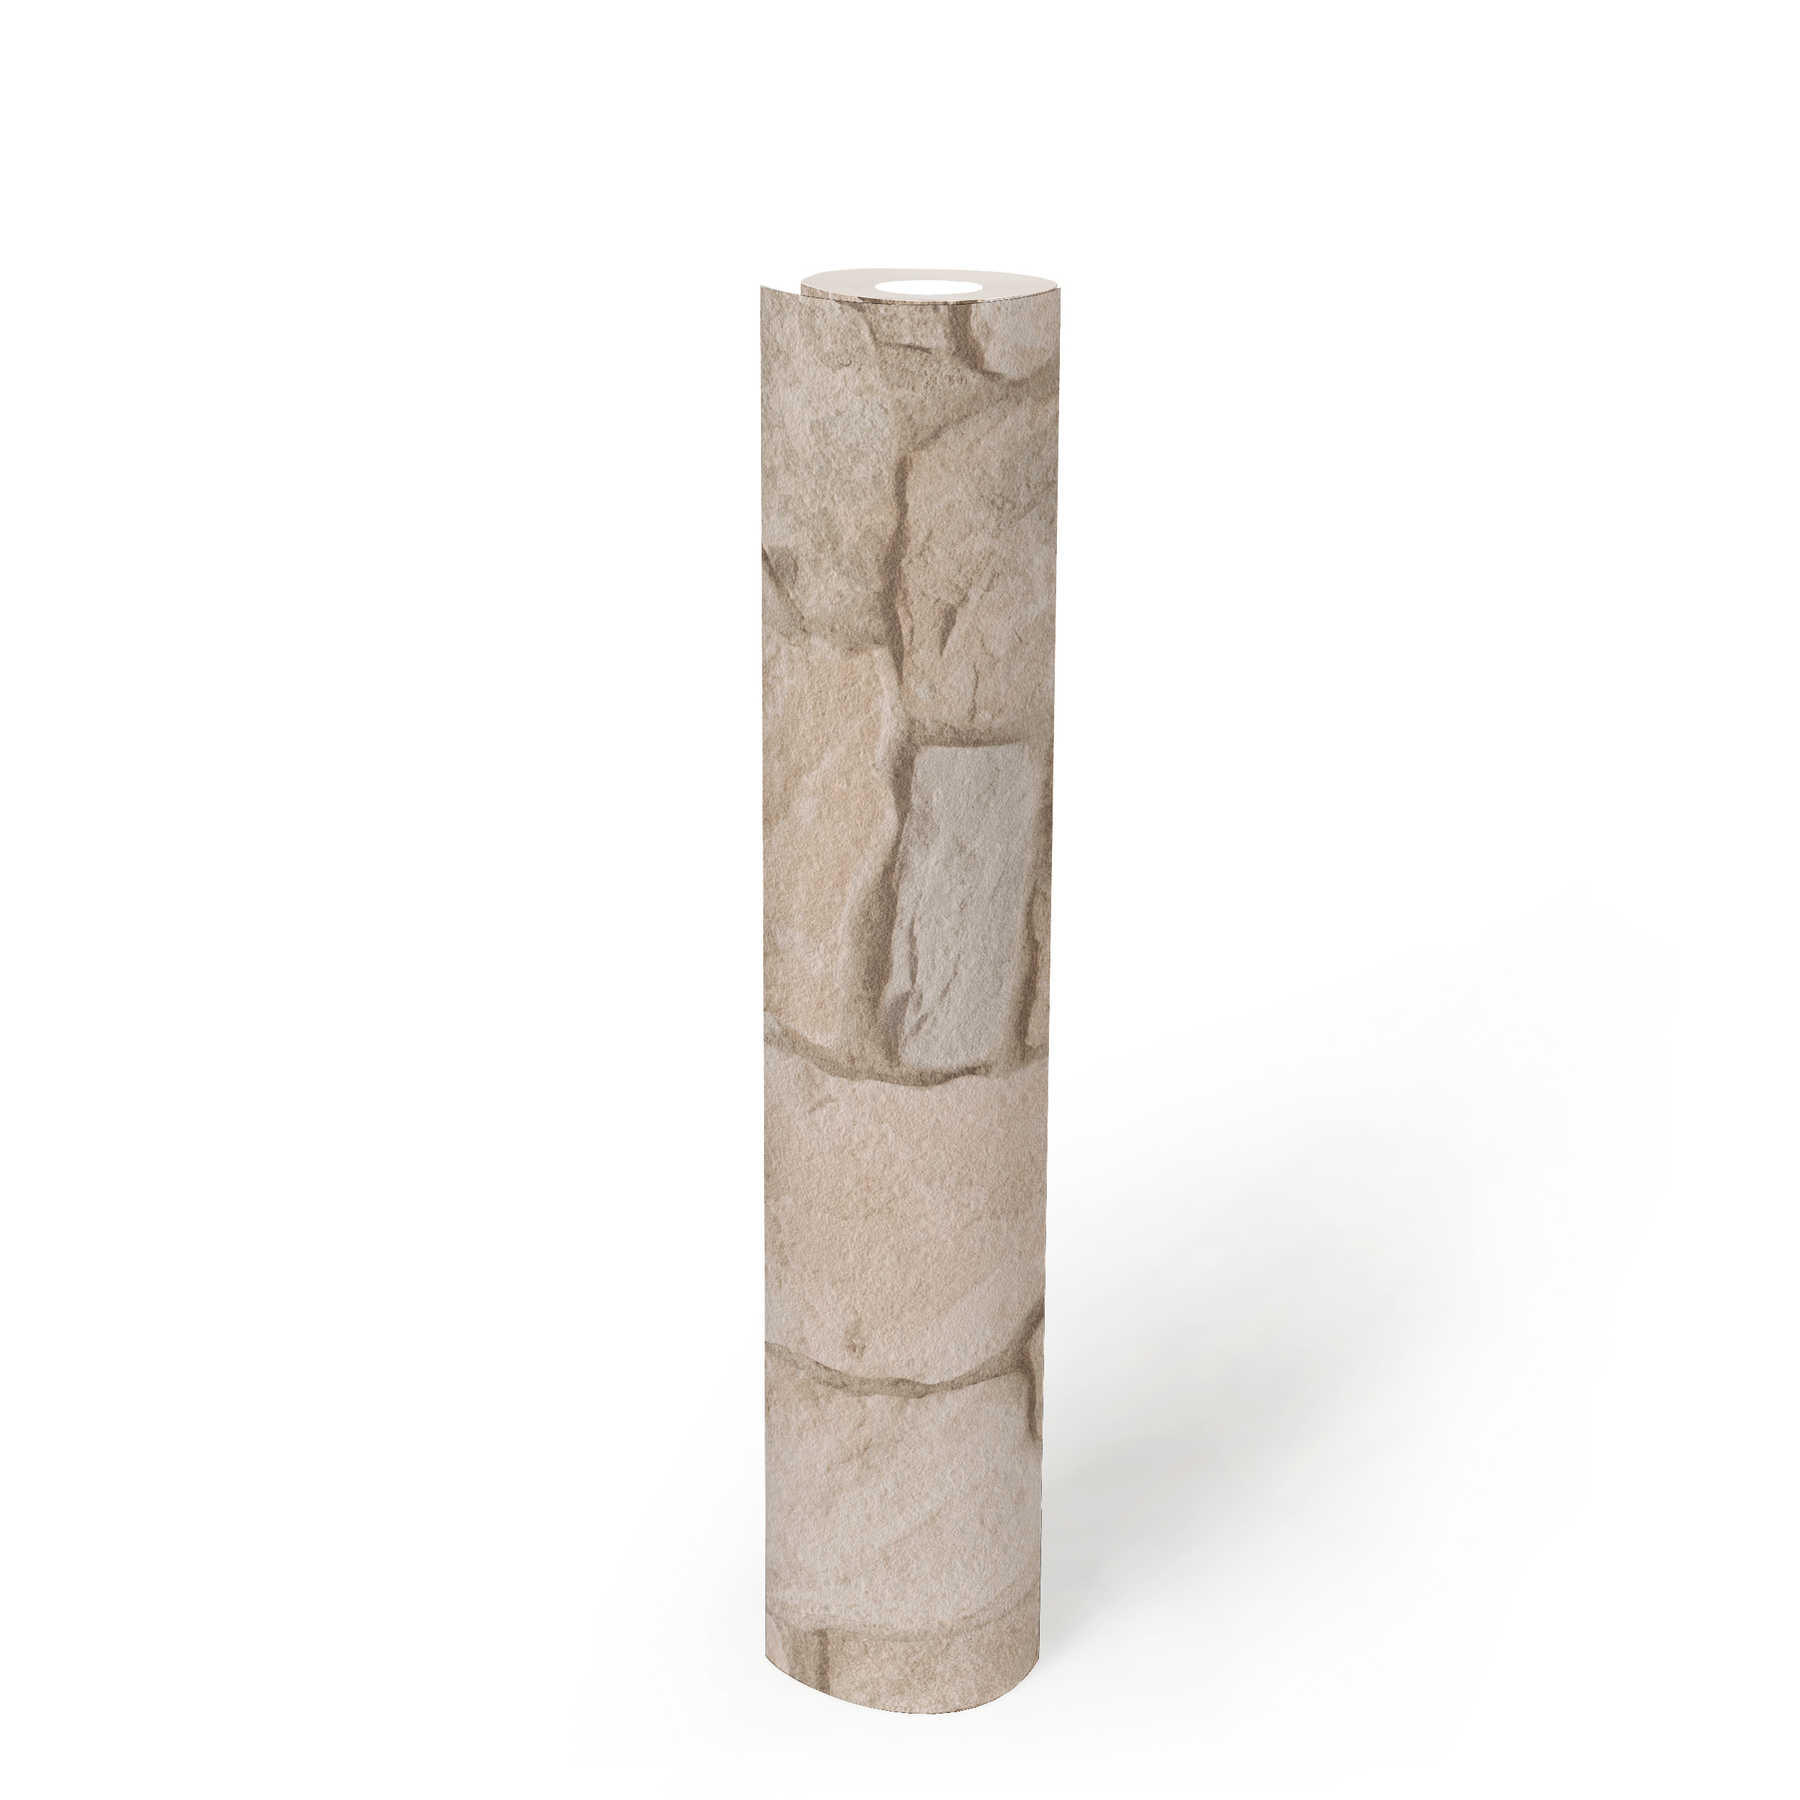             Papel pintado de piedra con efecto 3D y mampostería de arenisca - Beige, Marrón
        